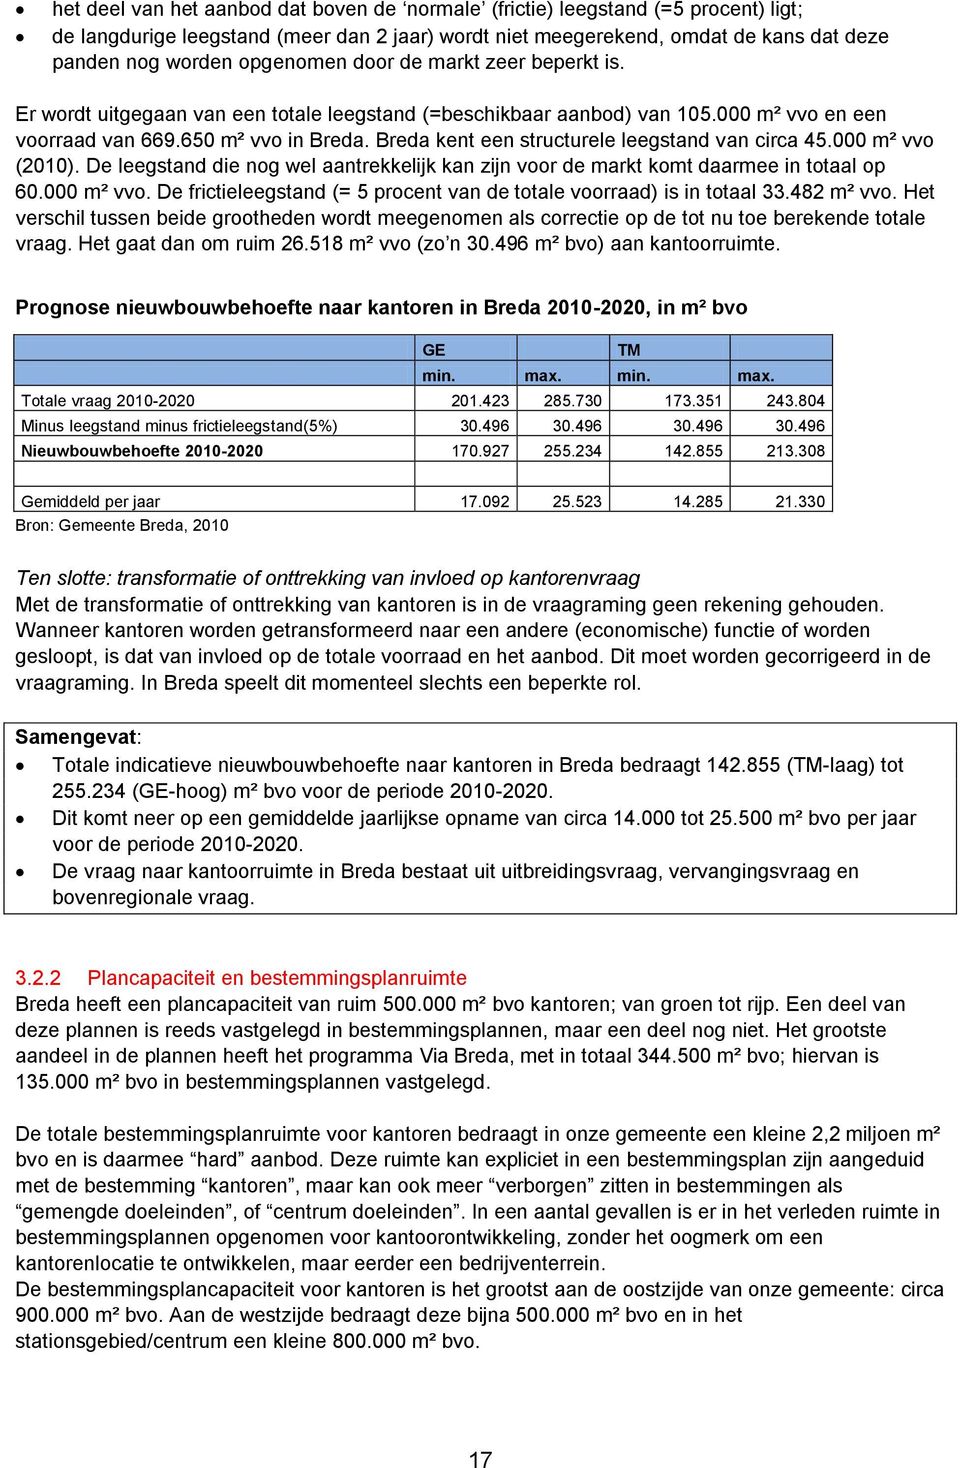 Breda kent een structurele leegstand van circa 45.000 m² vvo (2010). De leegstand die nog wel aantrekkelijk kan zijn voor de markt komt daarmee in totaal op 60.000 m² vvo. De frictieleegstand (= 5 procent van de totale voorraad) is in totaal 33.